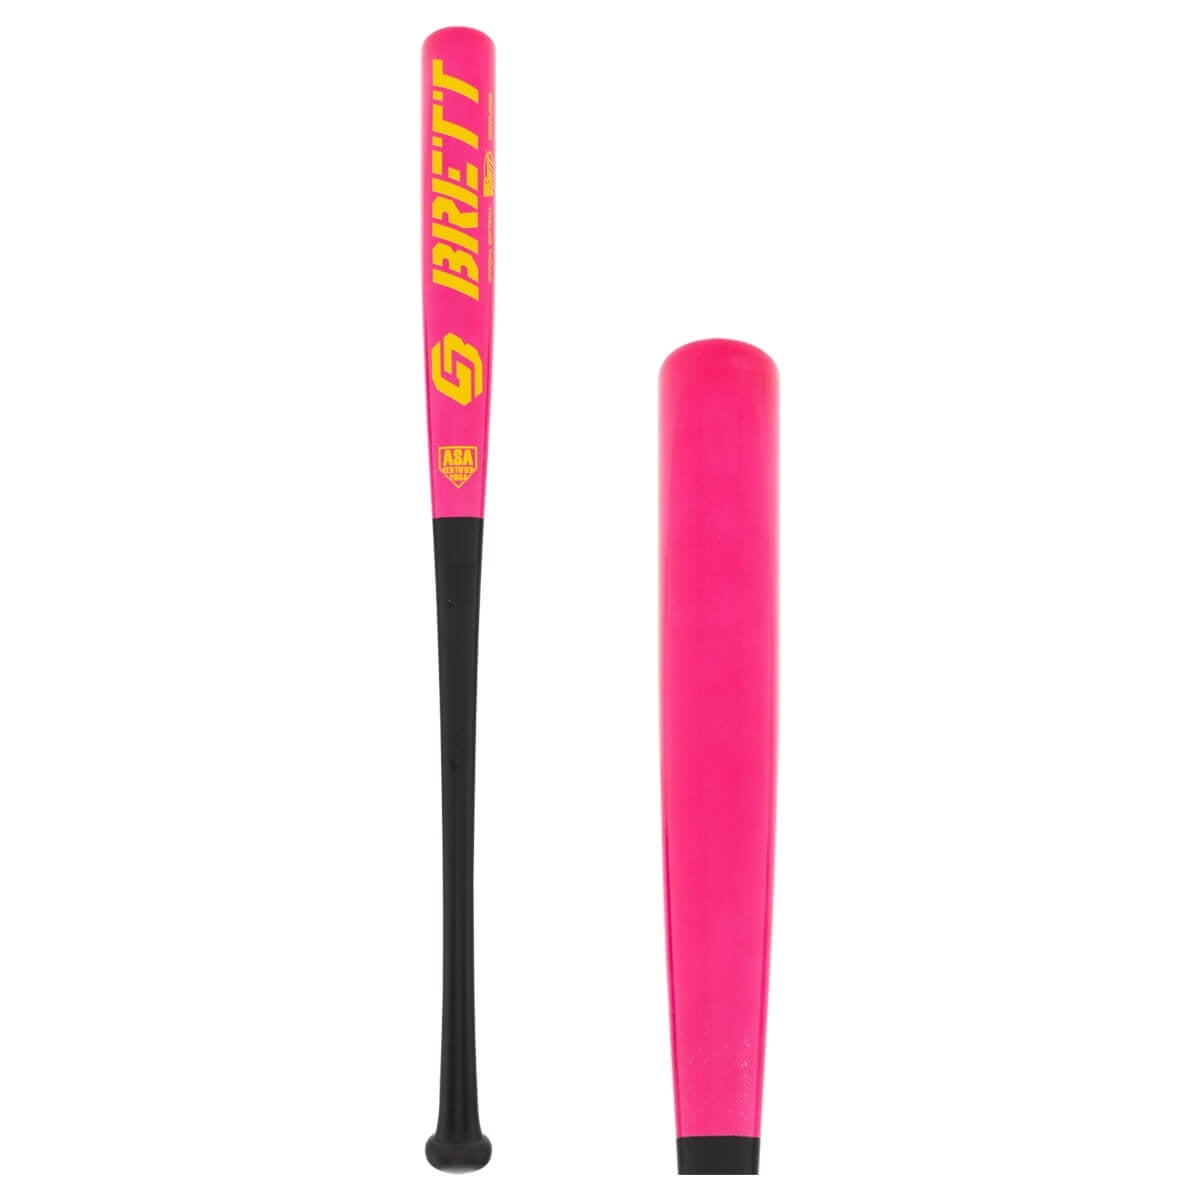 Details about   53cm Wood Baseball Wooden Softball Bat Racket Outdoor Sport Fitness Equipment 